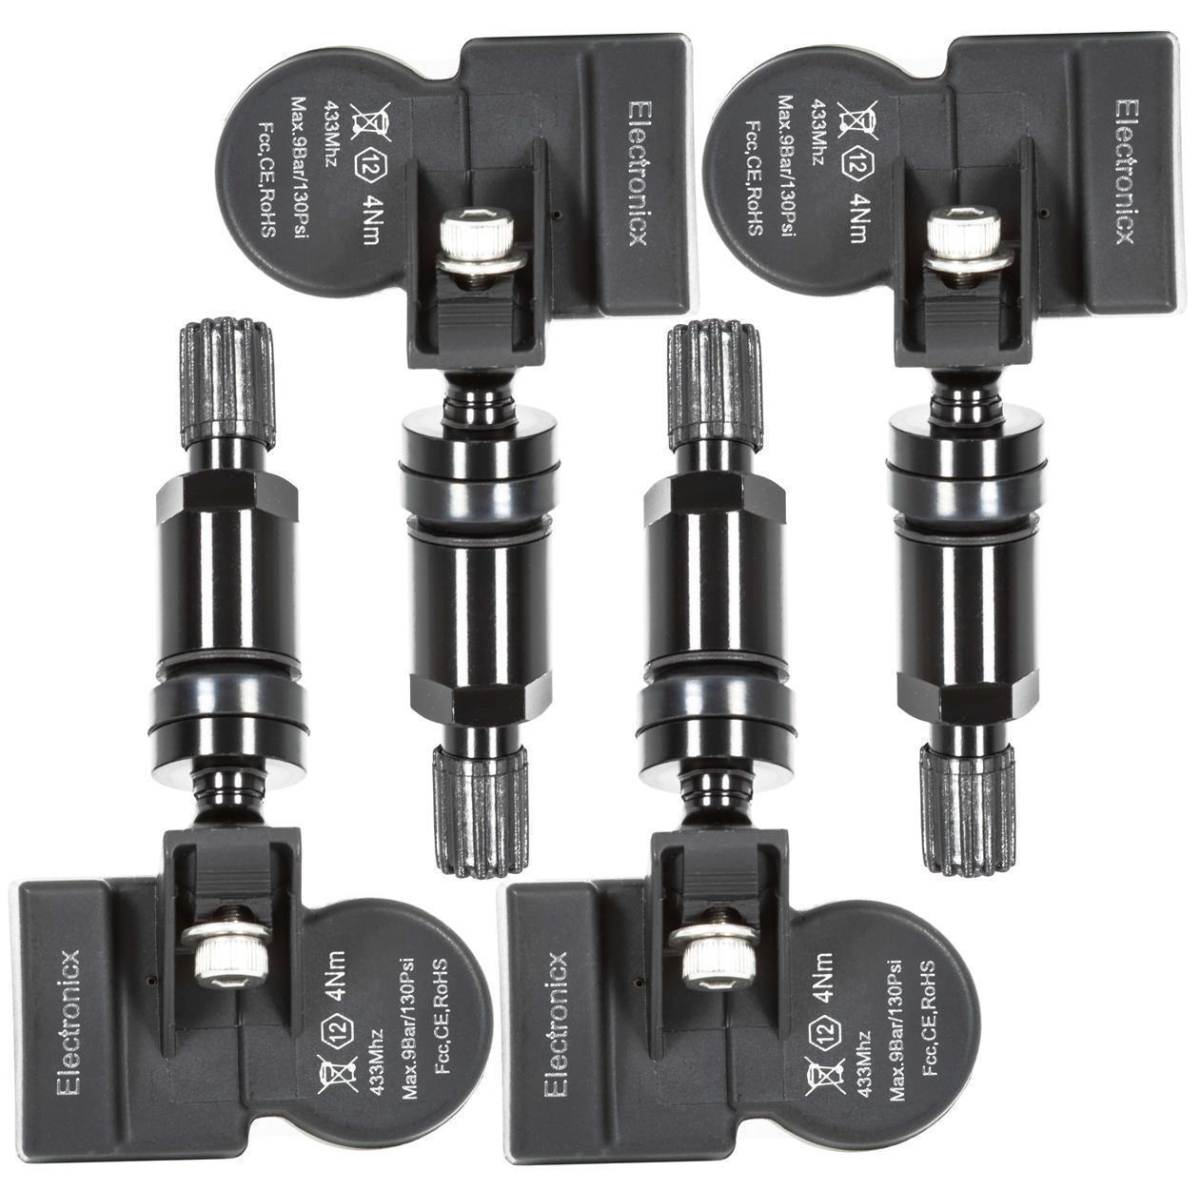 4x TPMS tire pressure sensors metal valve black for Volvo C30 C70 S40 S60 S80 V50 V60 V70 XC60 XC70